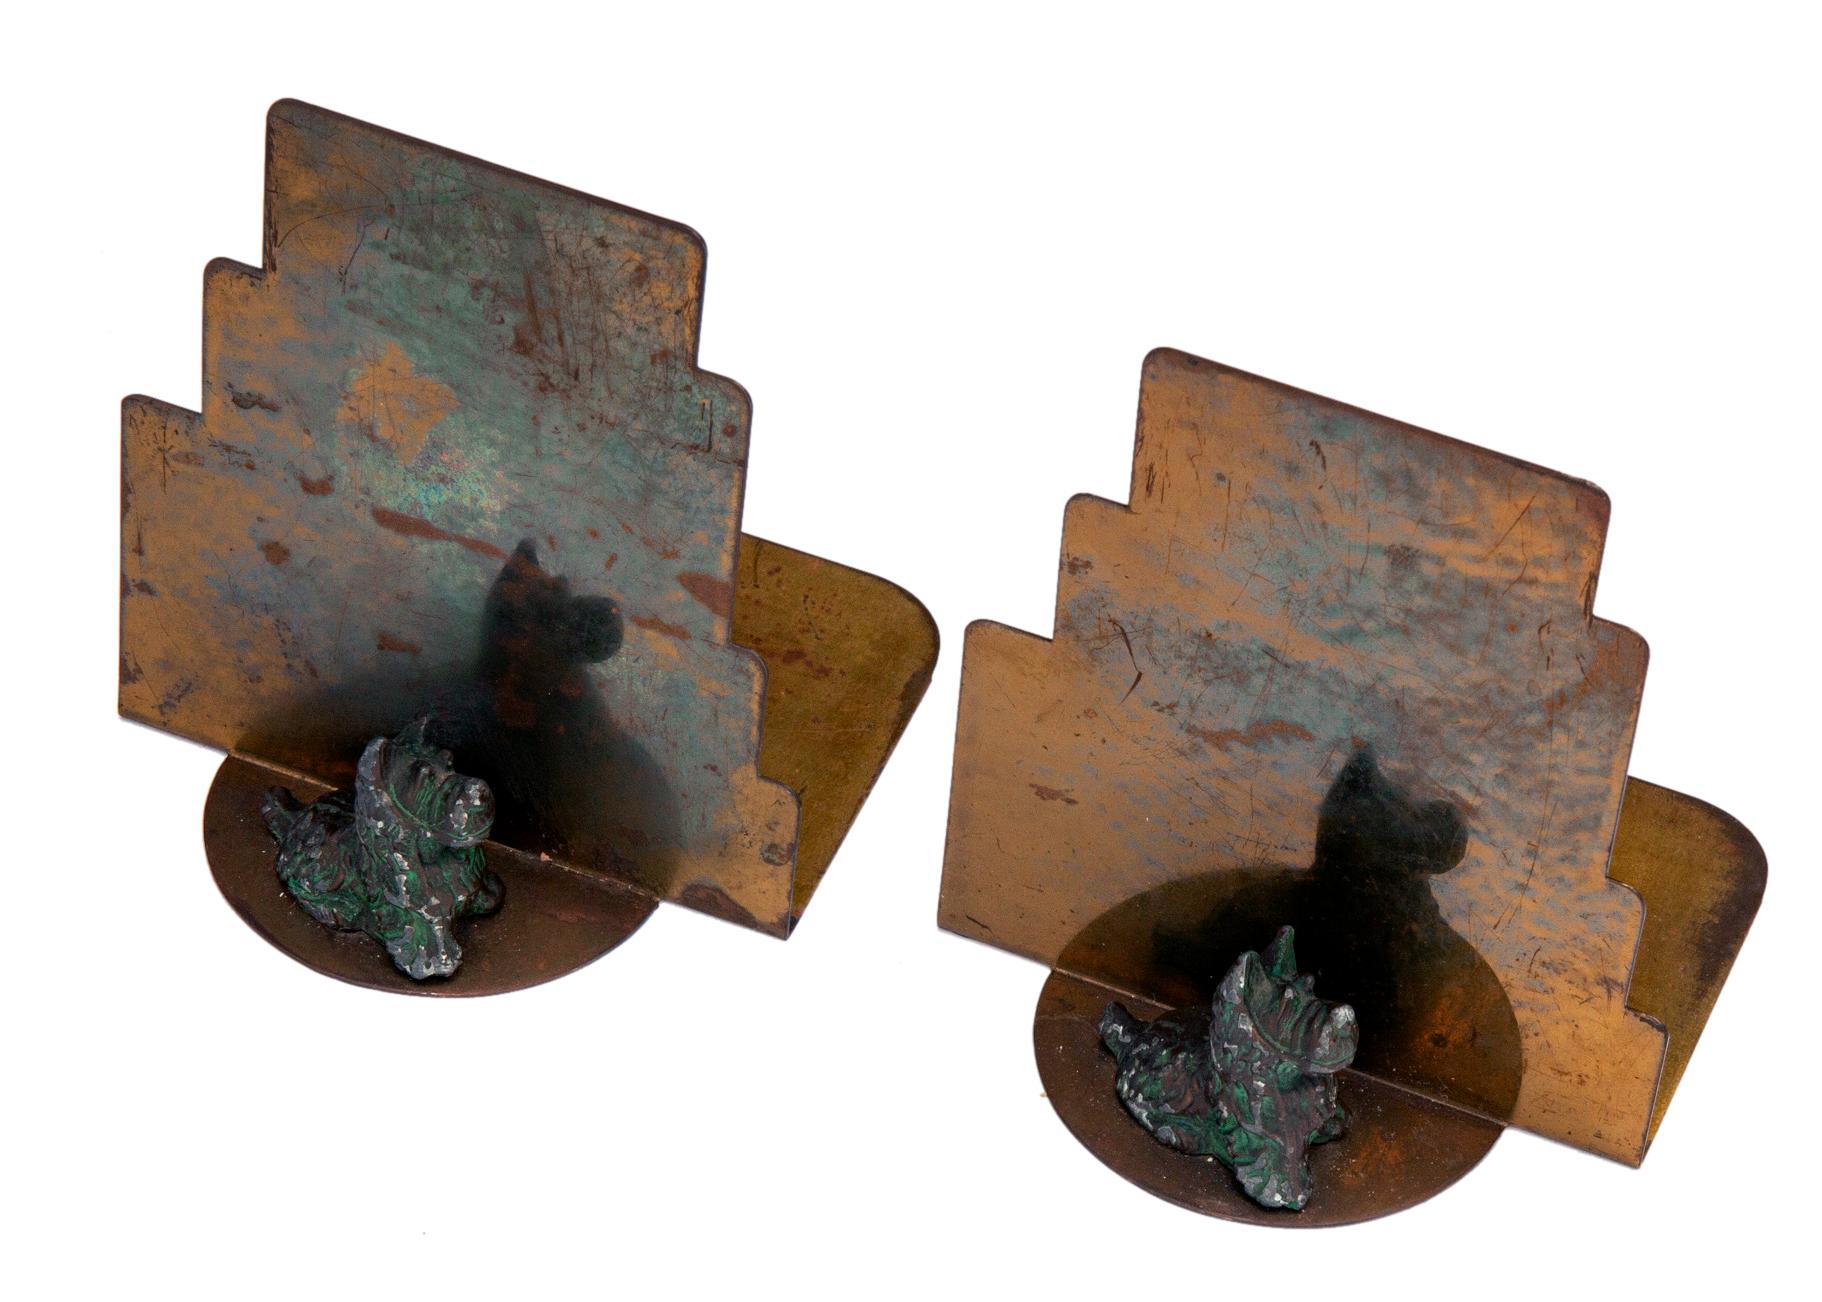 Art-Déco-Buchstützen mit vollplastischen Scottish Terriern in Bronze auf gestuftem klassischem Deco-Hintergrund mit gesprenkelter Originalpatina.
Die Scotties stehen auf einem halbrunden Sockel.